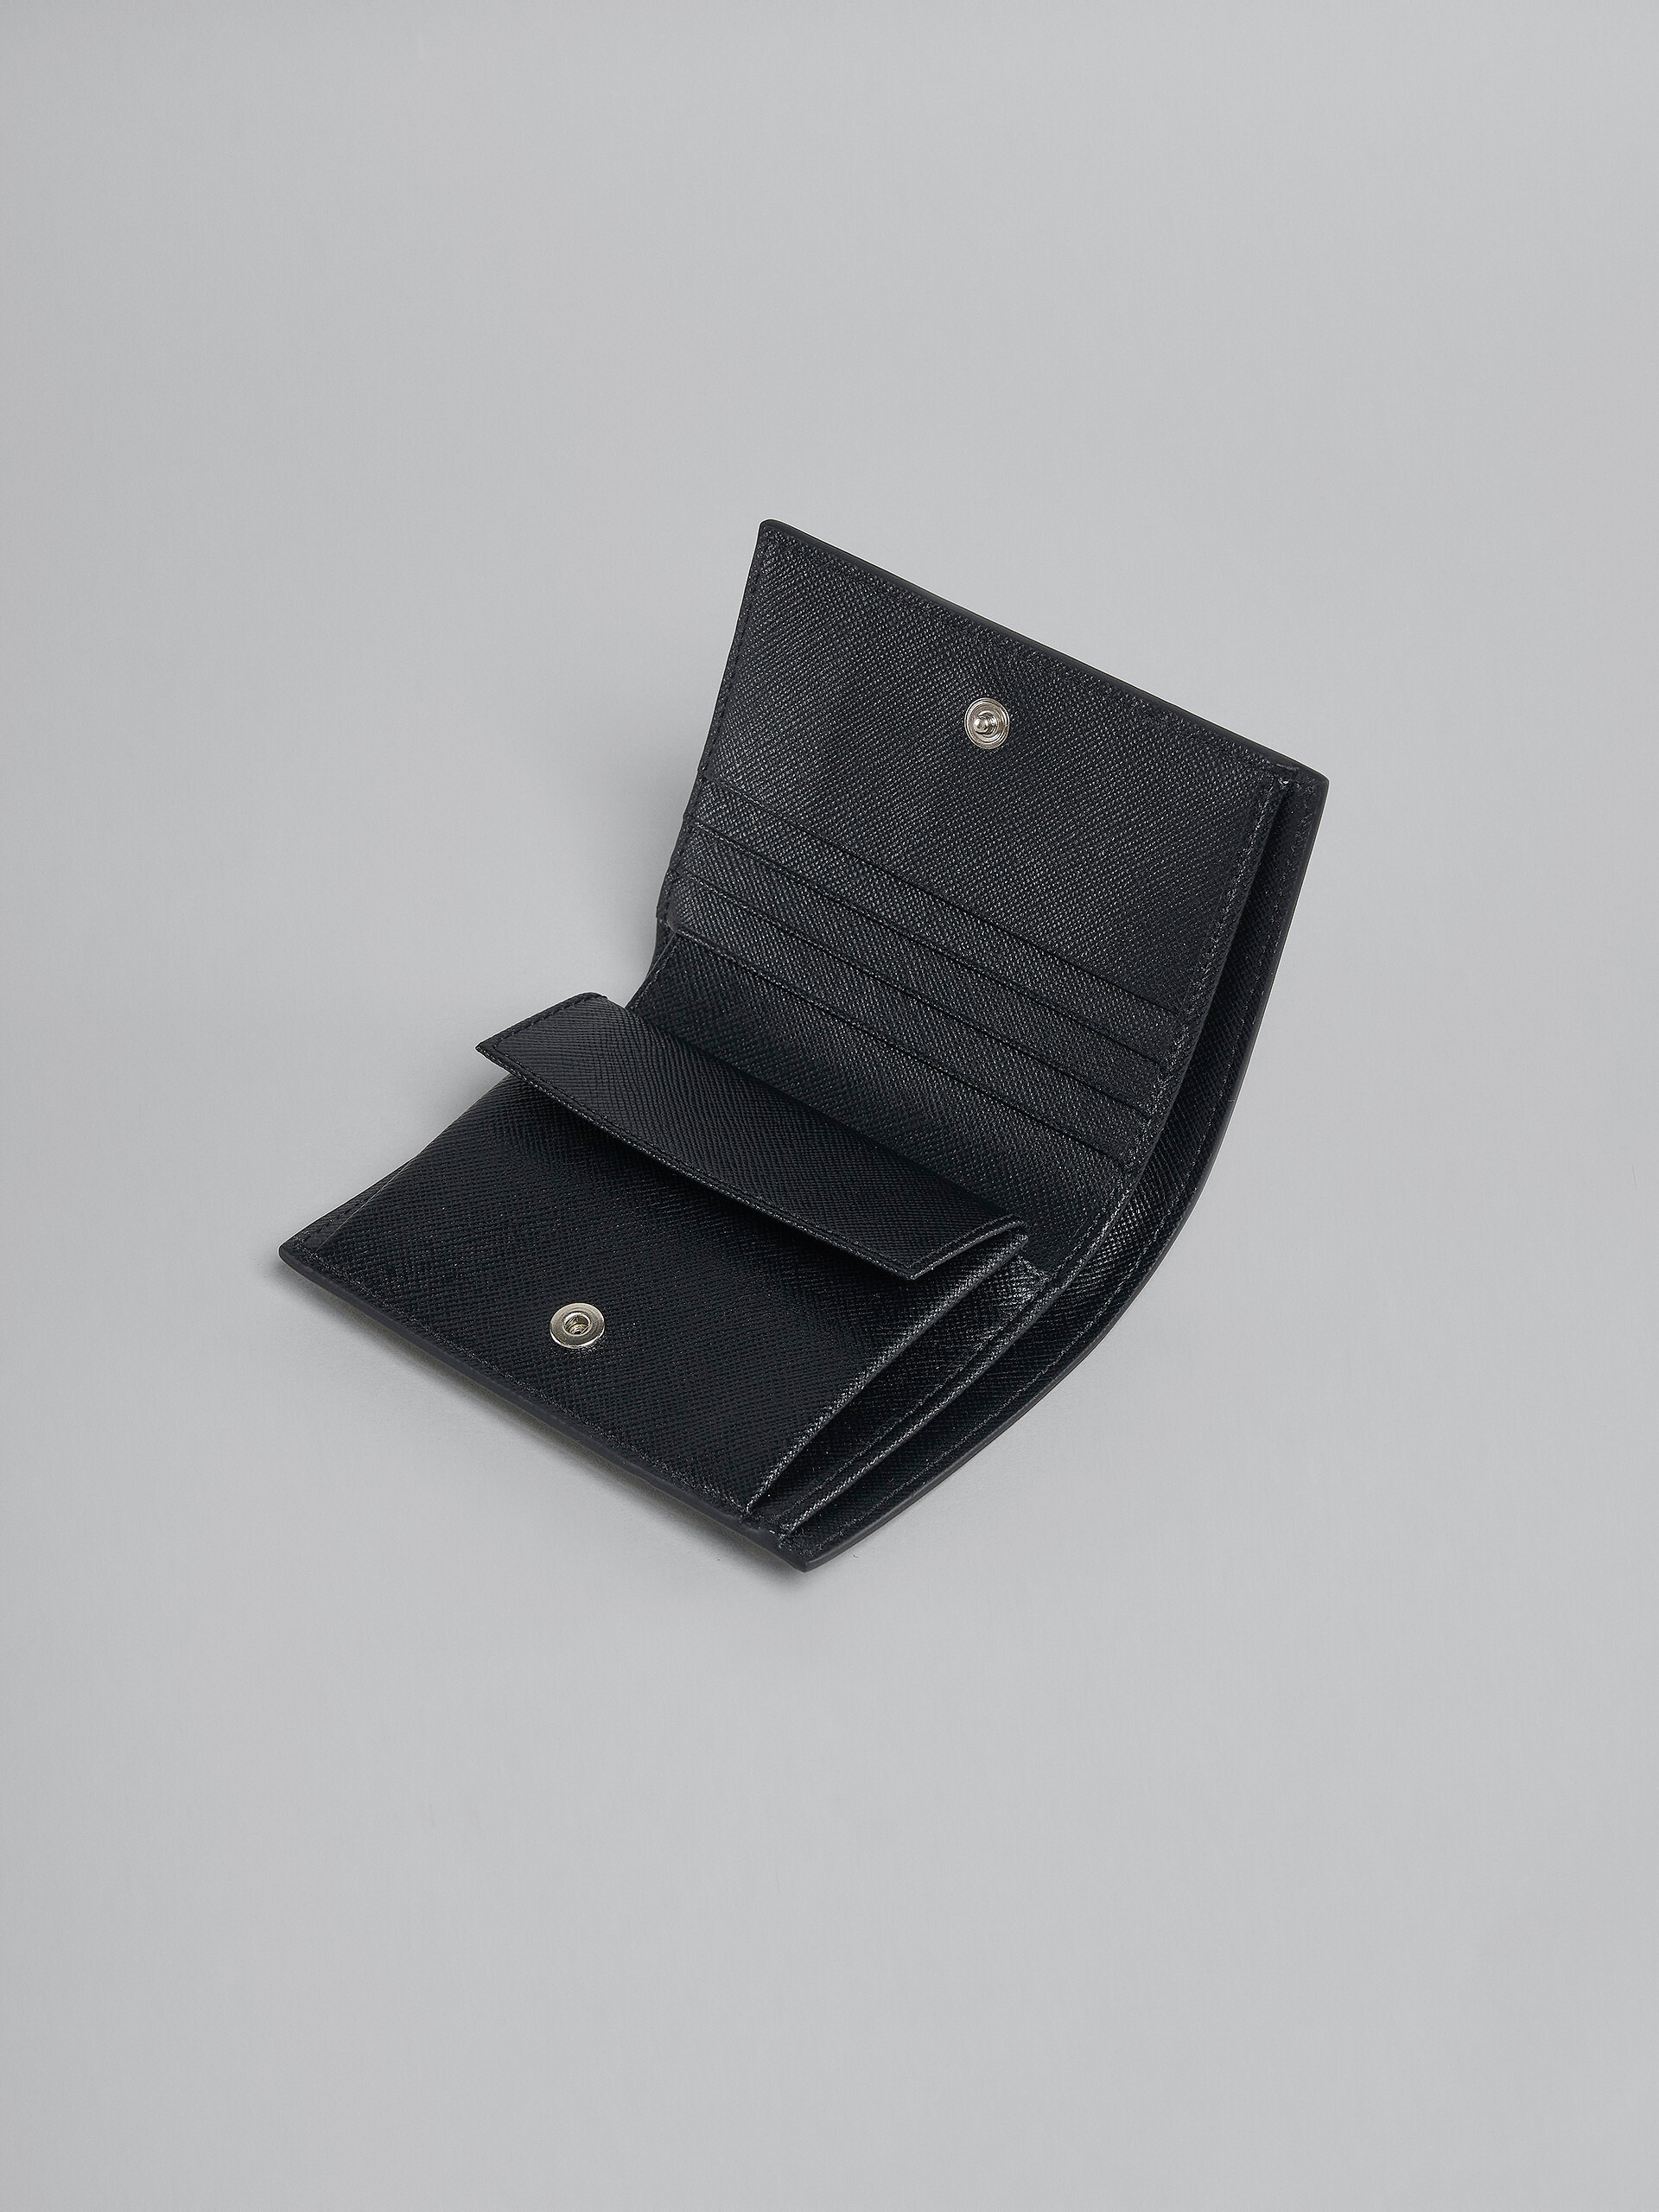 Portafoglio bi-fold in vitello Saffiano nero - Portafogli - Image 4